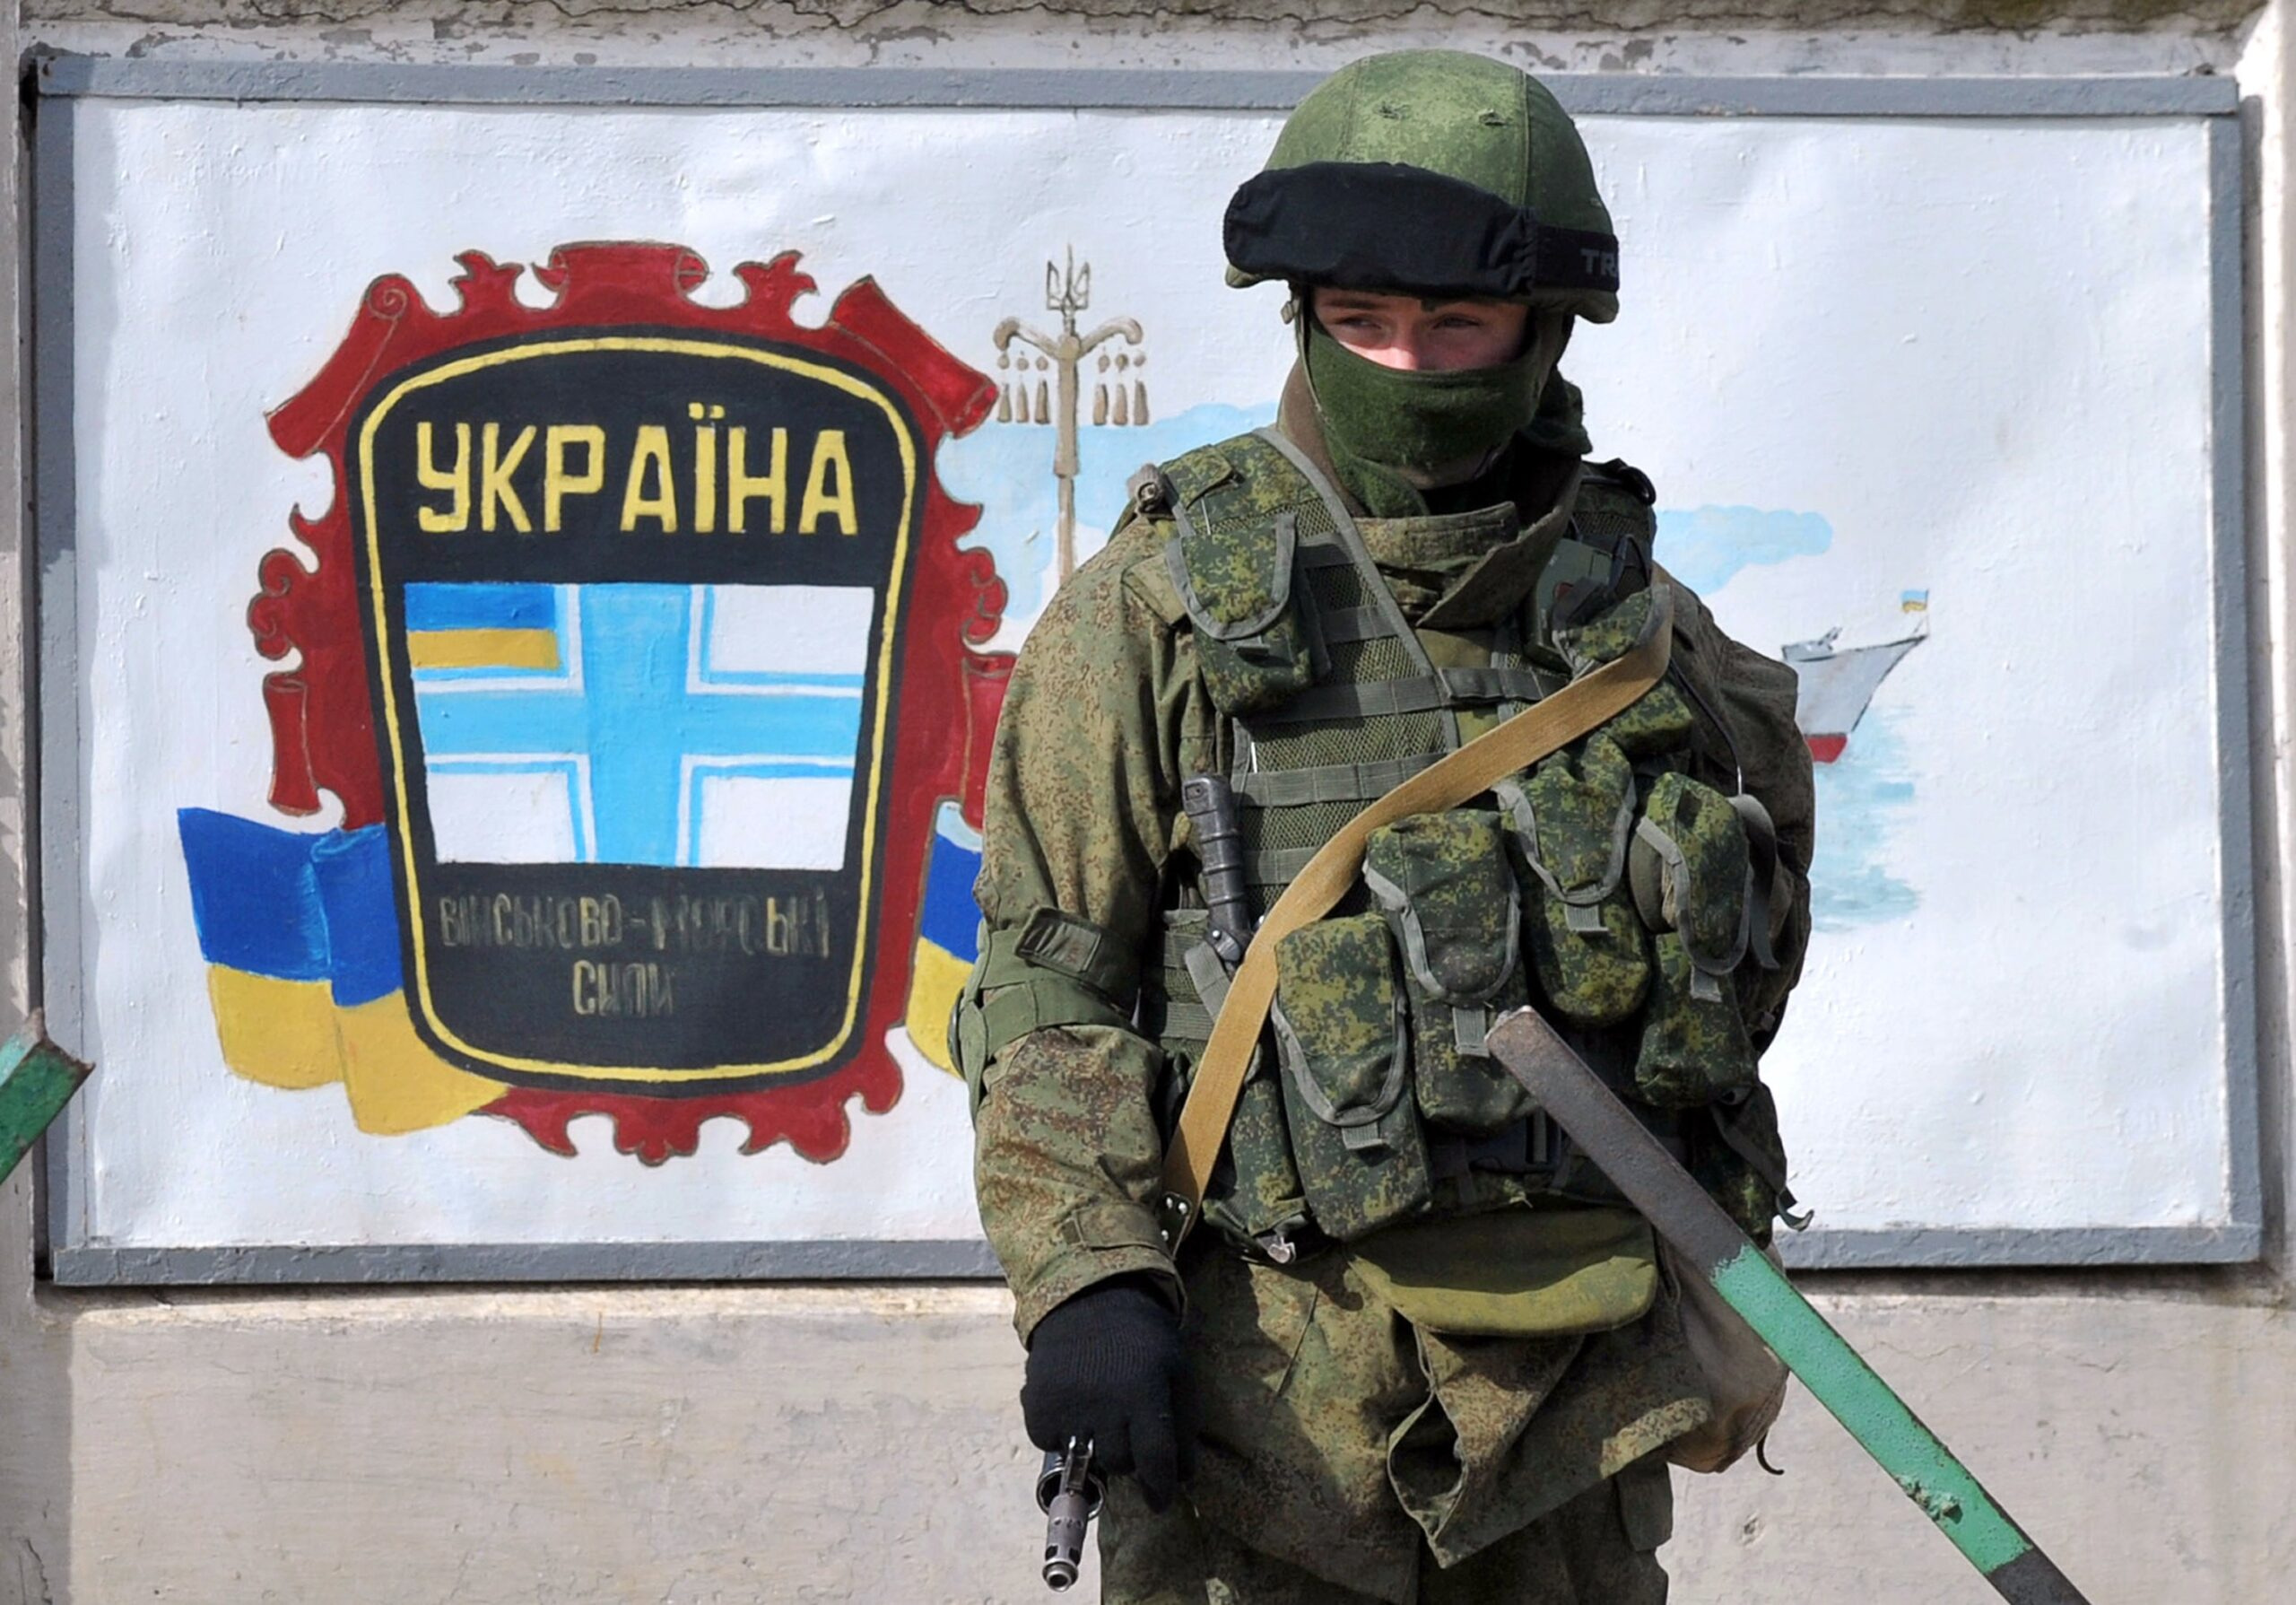 Neoznačený ruský voják hlídá ukrajinskou základnu v Simferopolu. Březen 2014.